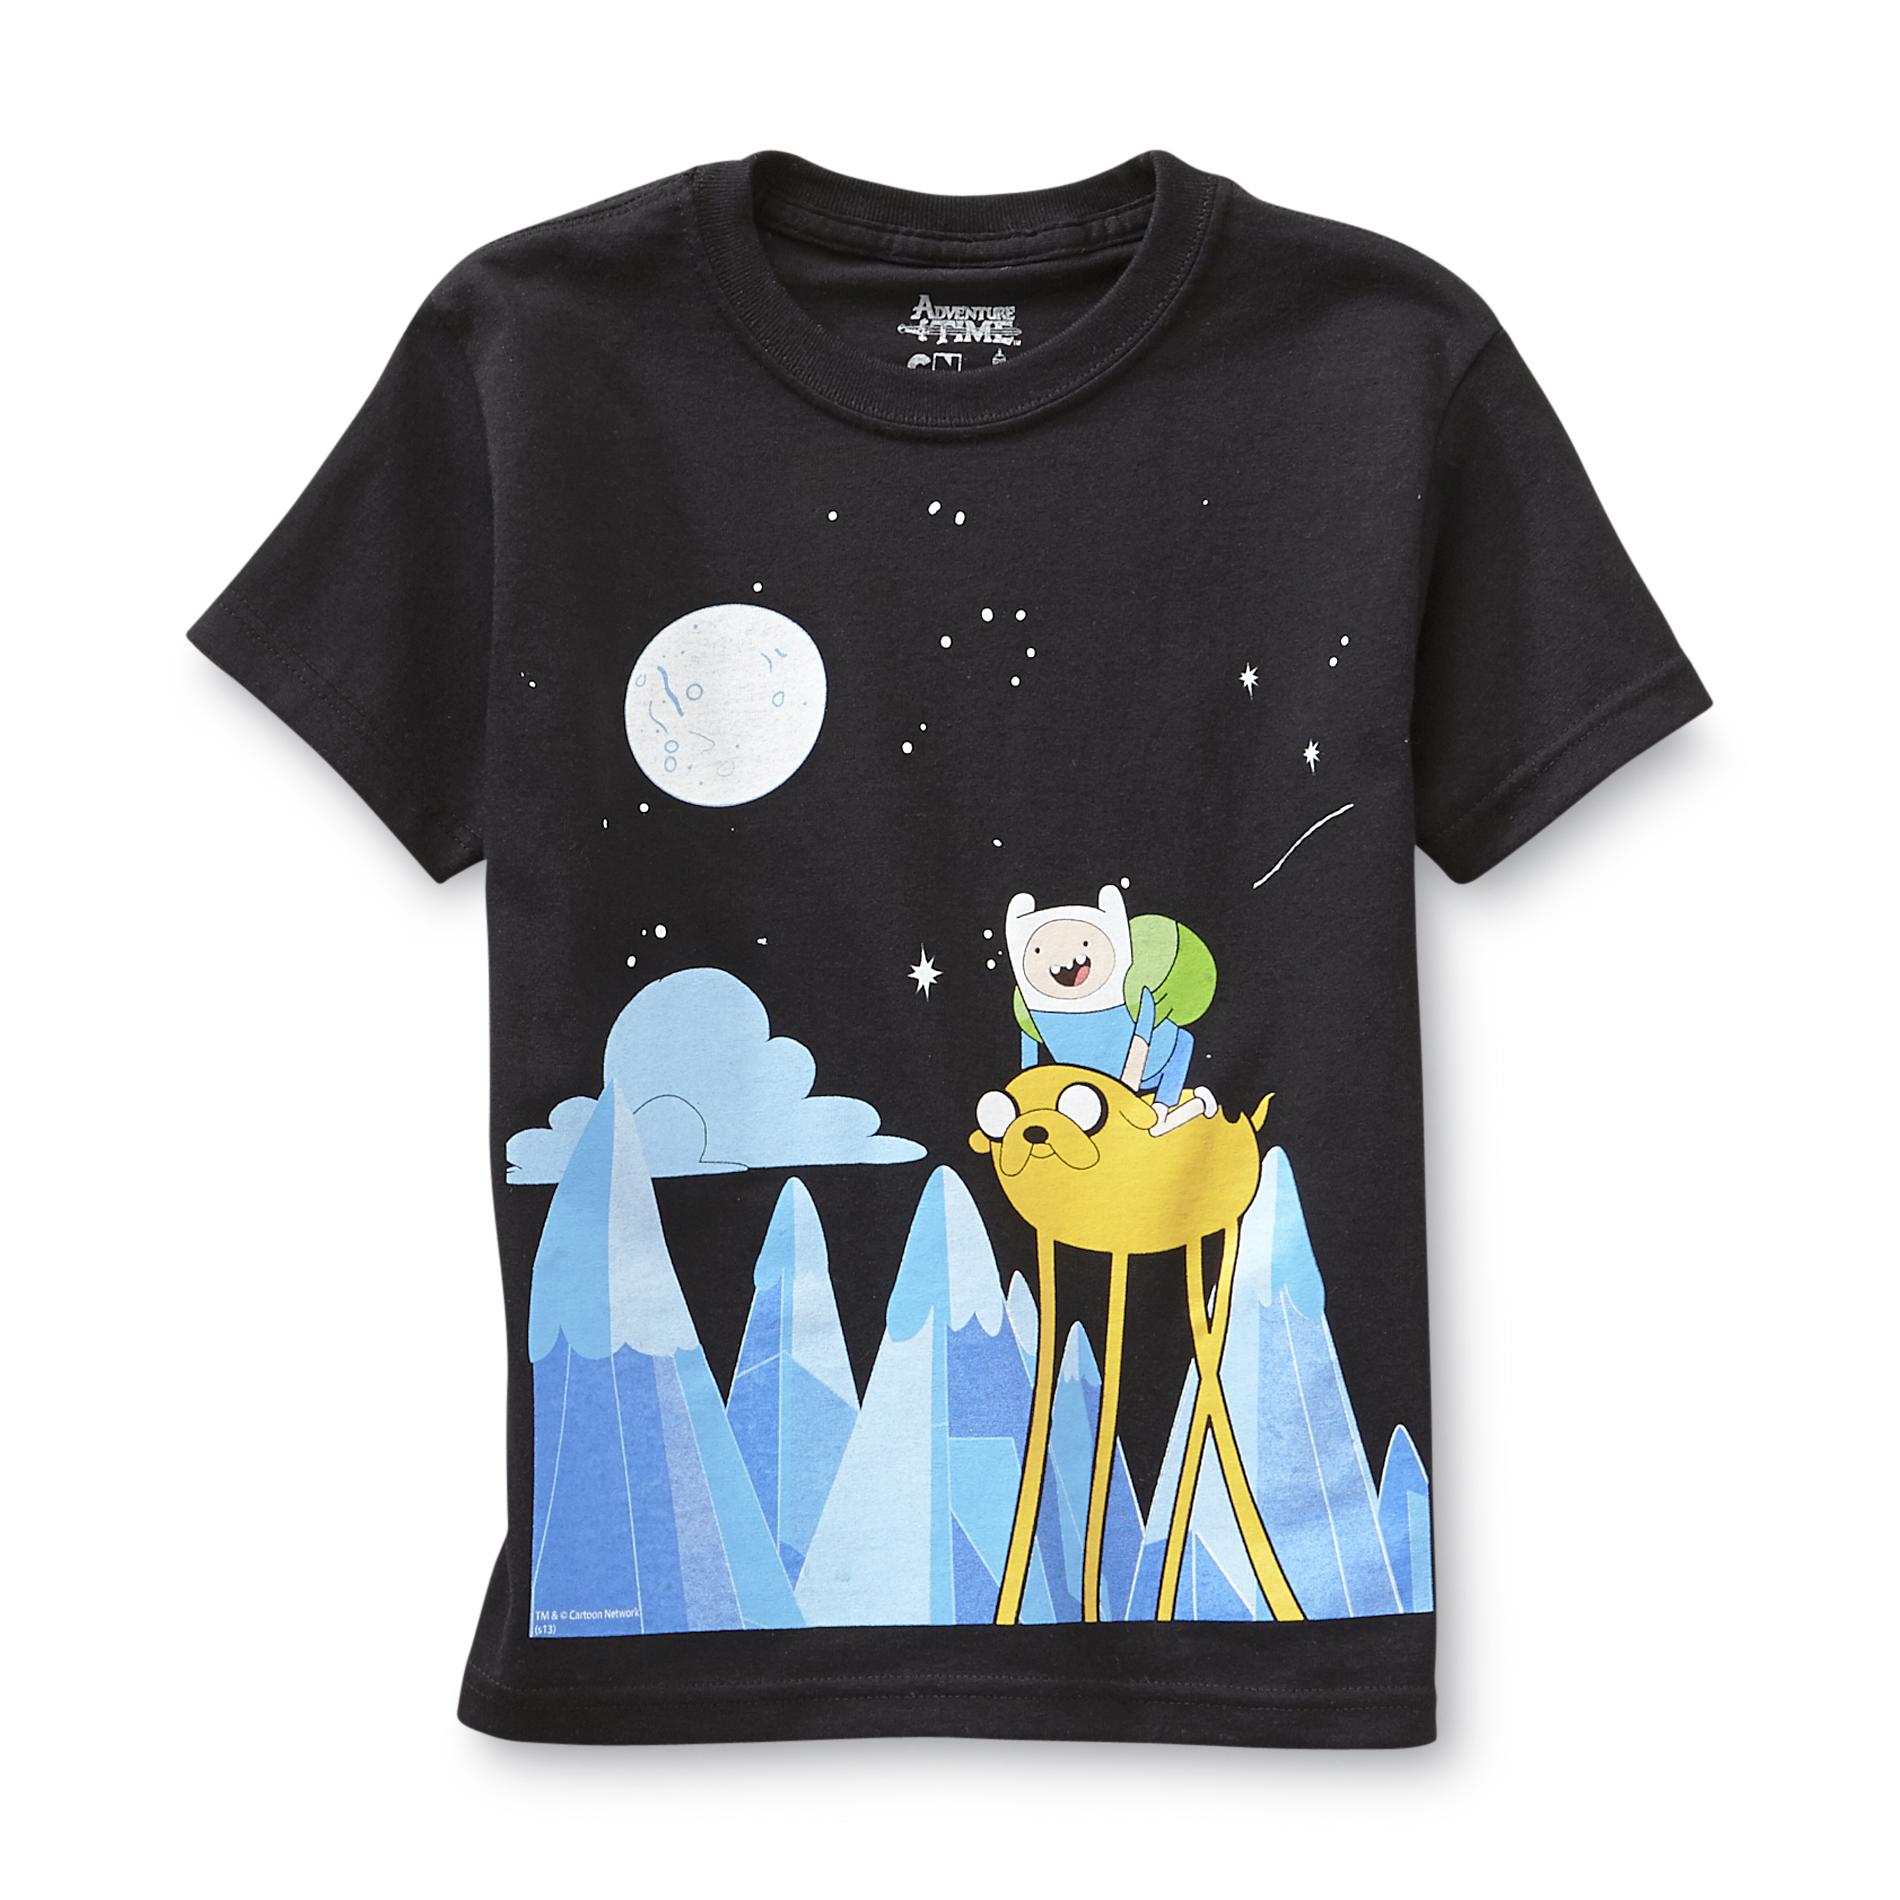 Cartoon Network Adventure Time Boy's T-Shirt